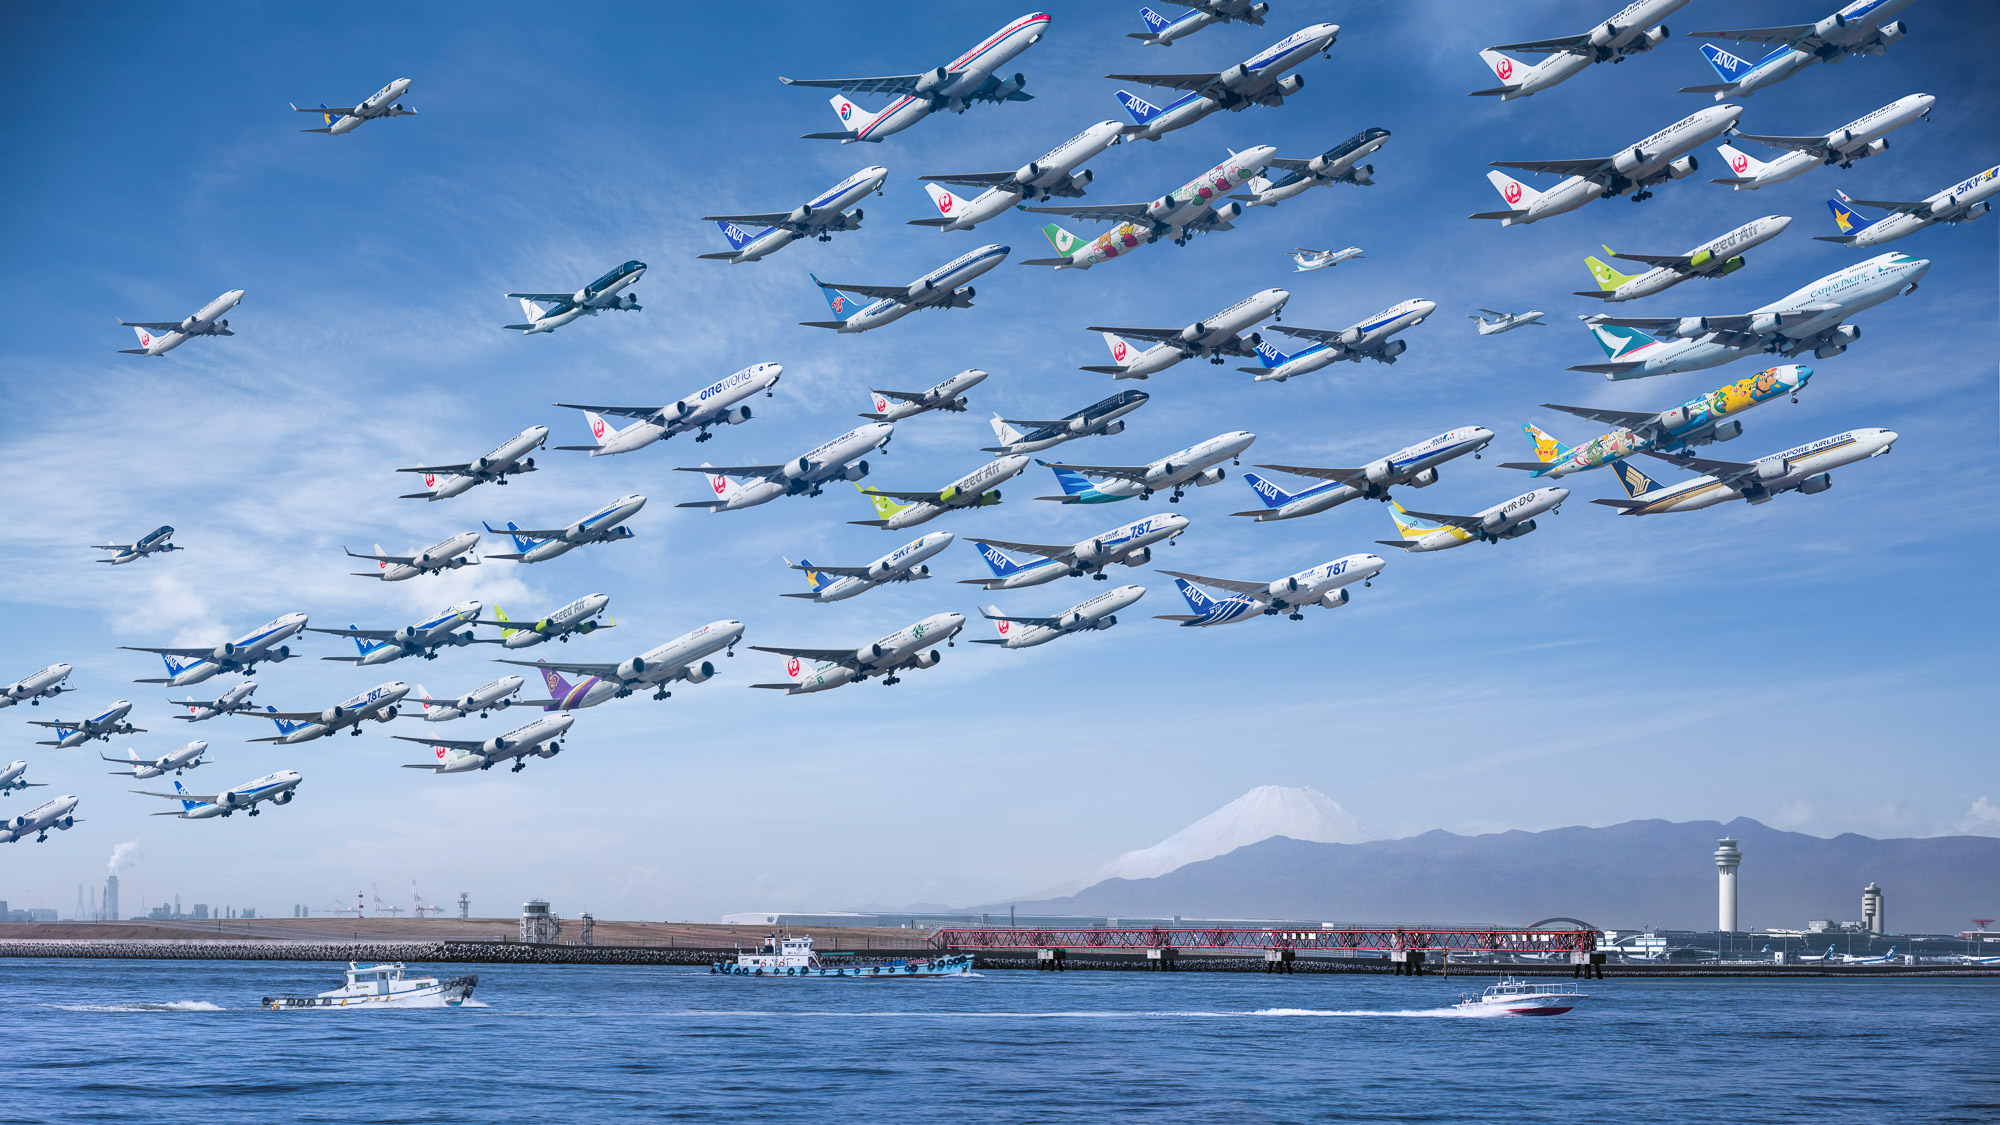 8時間ぶんの離着陸を1枚に収めた Airportraits 写真シリーズ公開 約2年間で世界の空港を撮影 Engadget 日本版